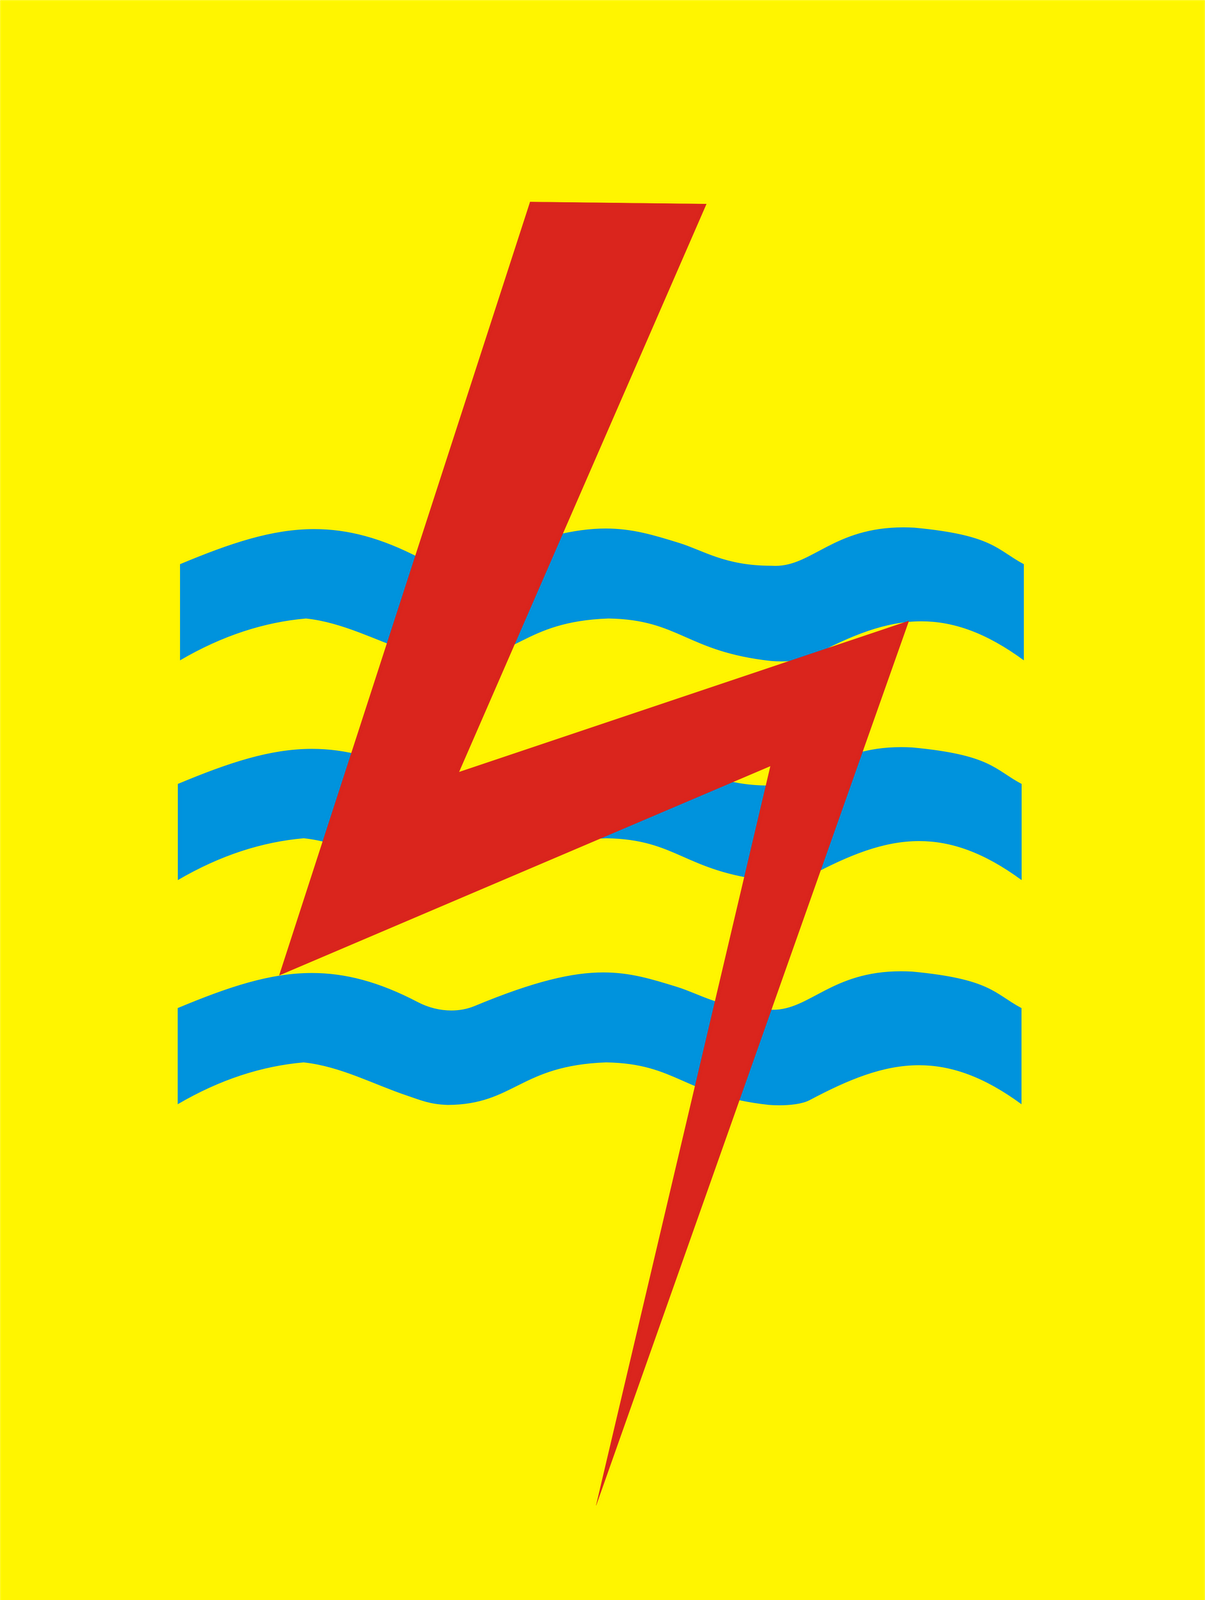 Logo Perusahaan Listrik Negara PLN Kumpulan Logo Lambang Indonesia